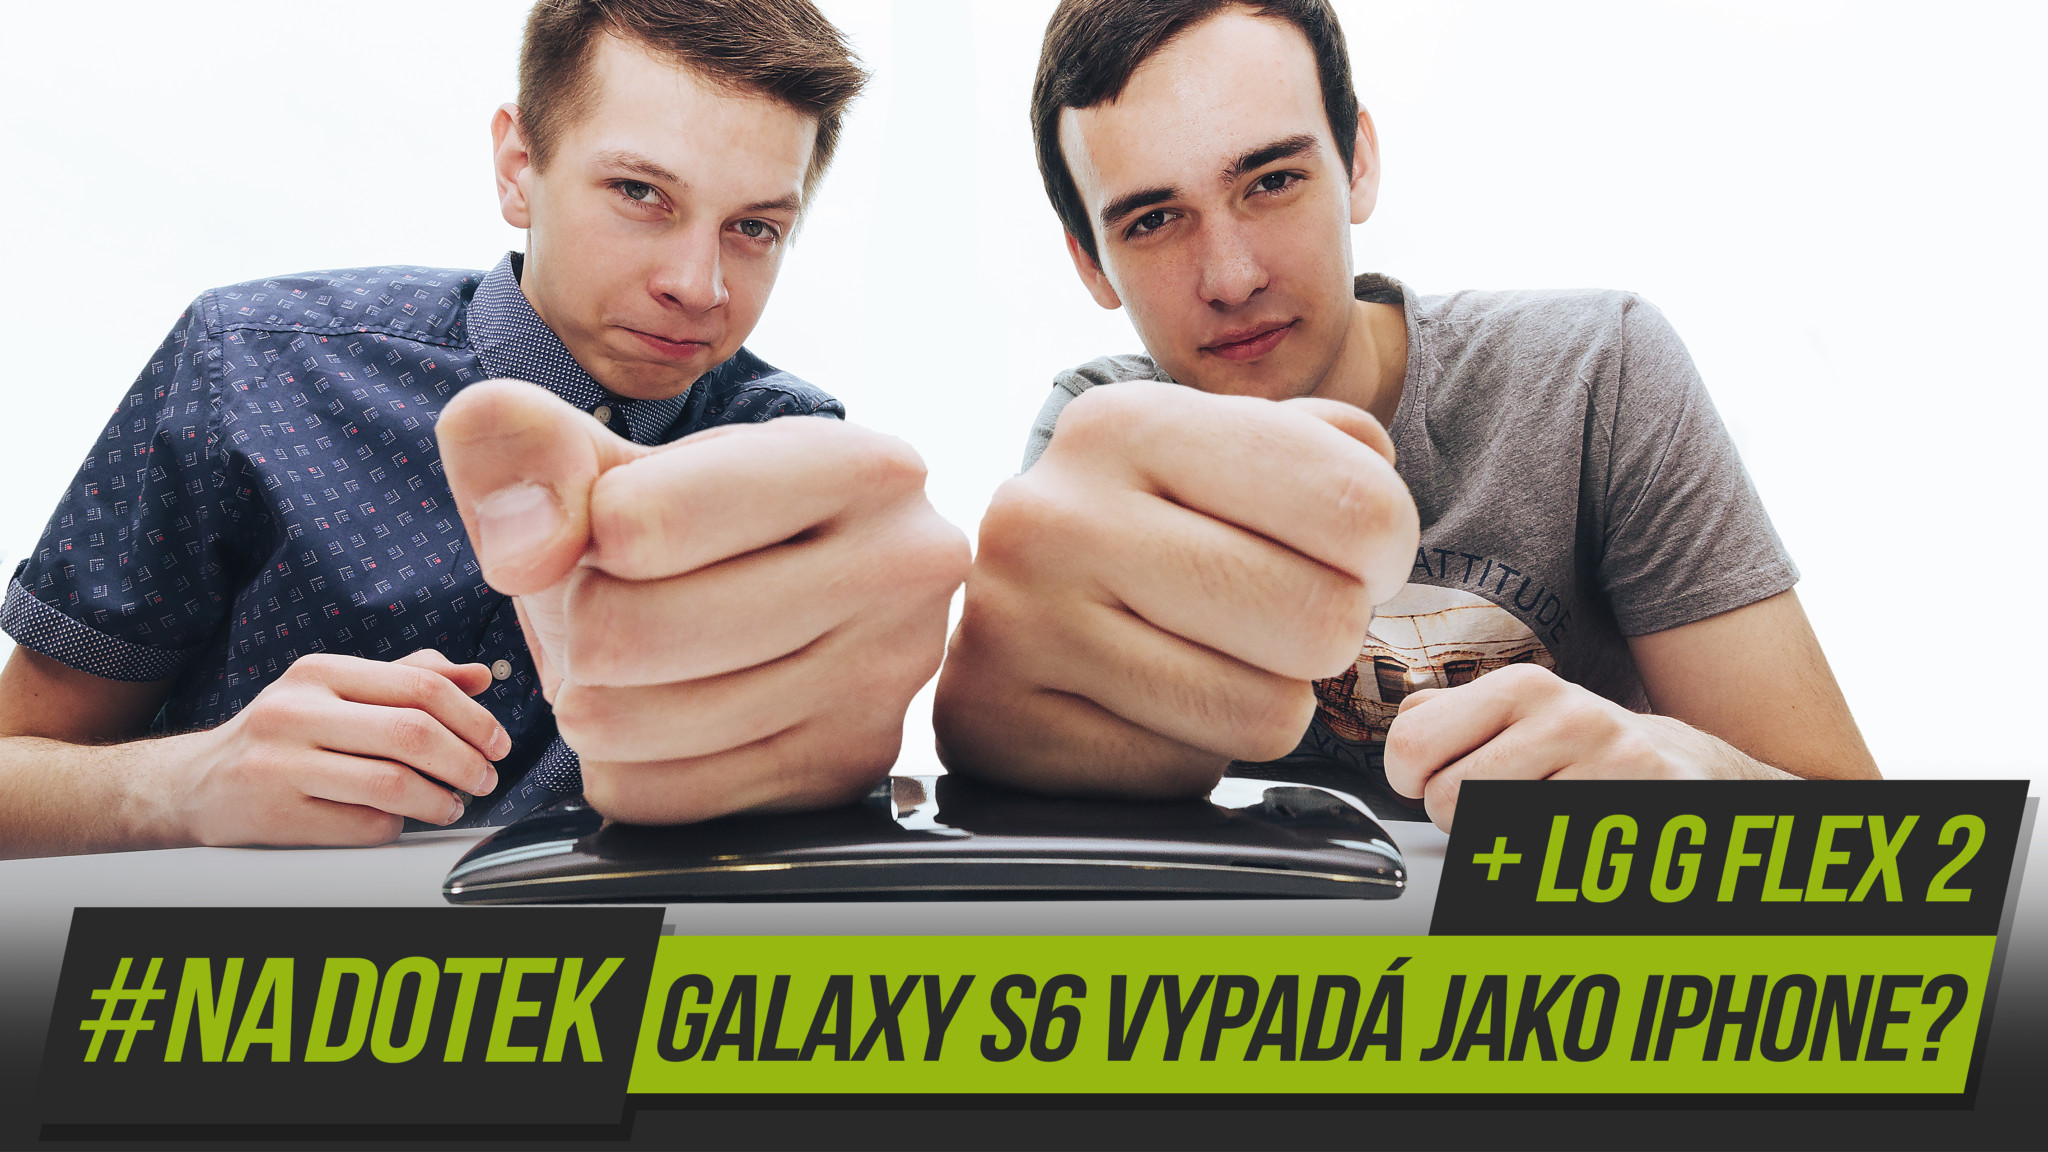 #NaDotek – Galaxy S6 vypadá jako iPhone? + LG G Flex 2